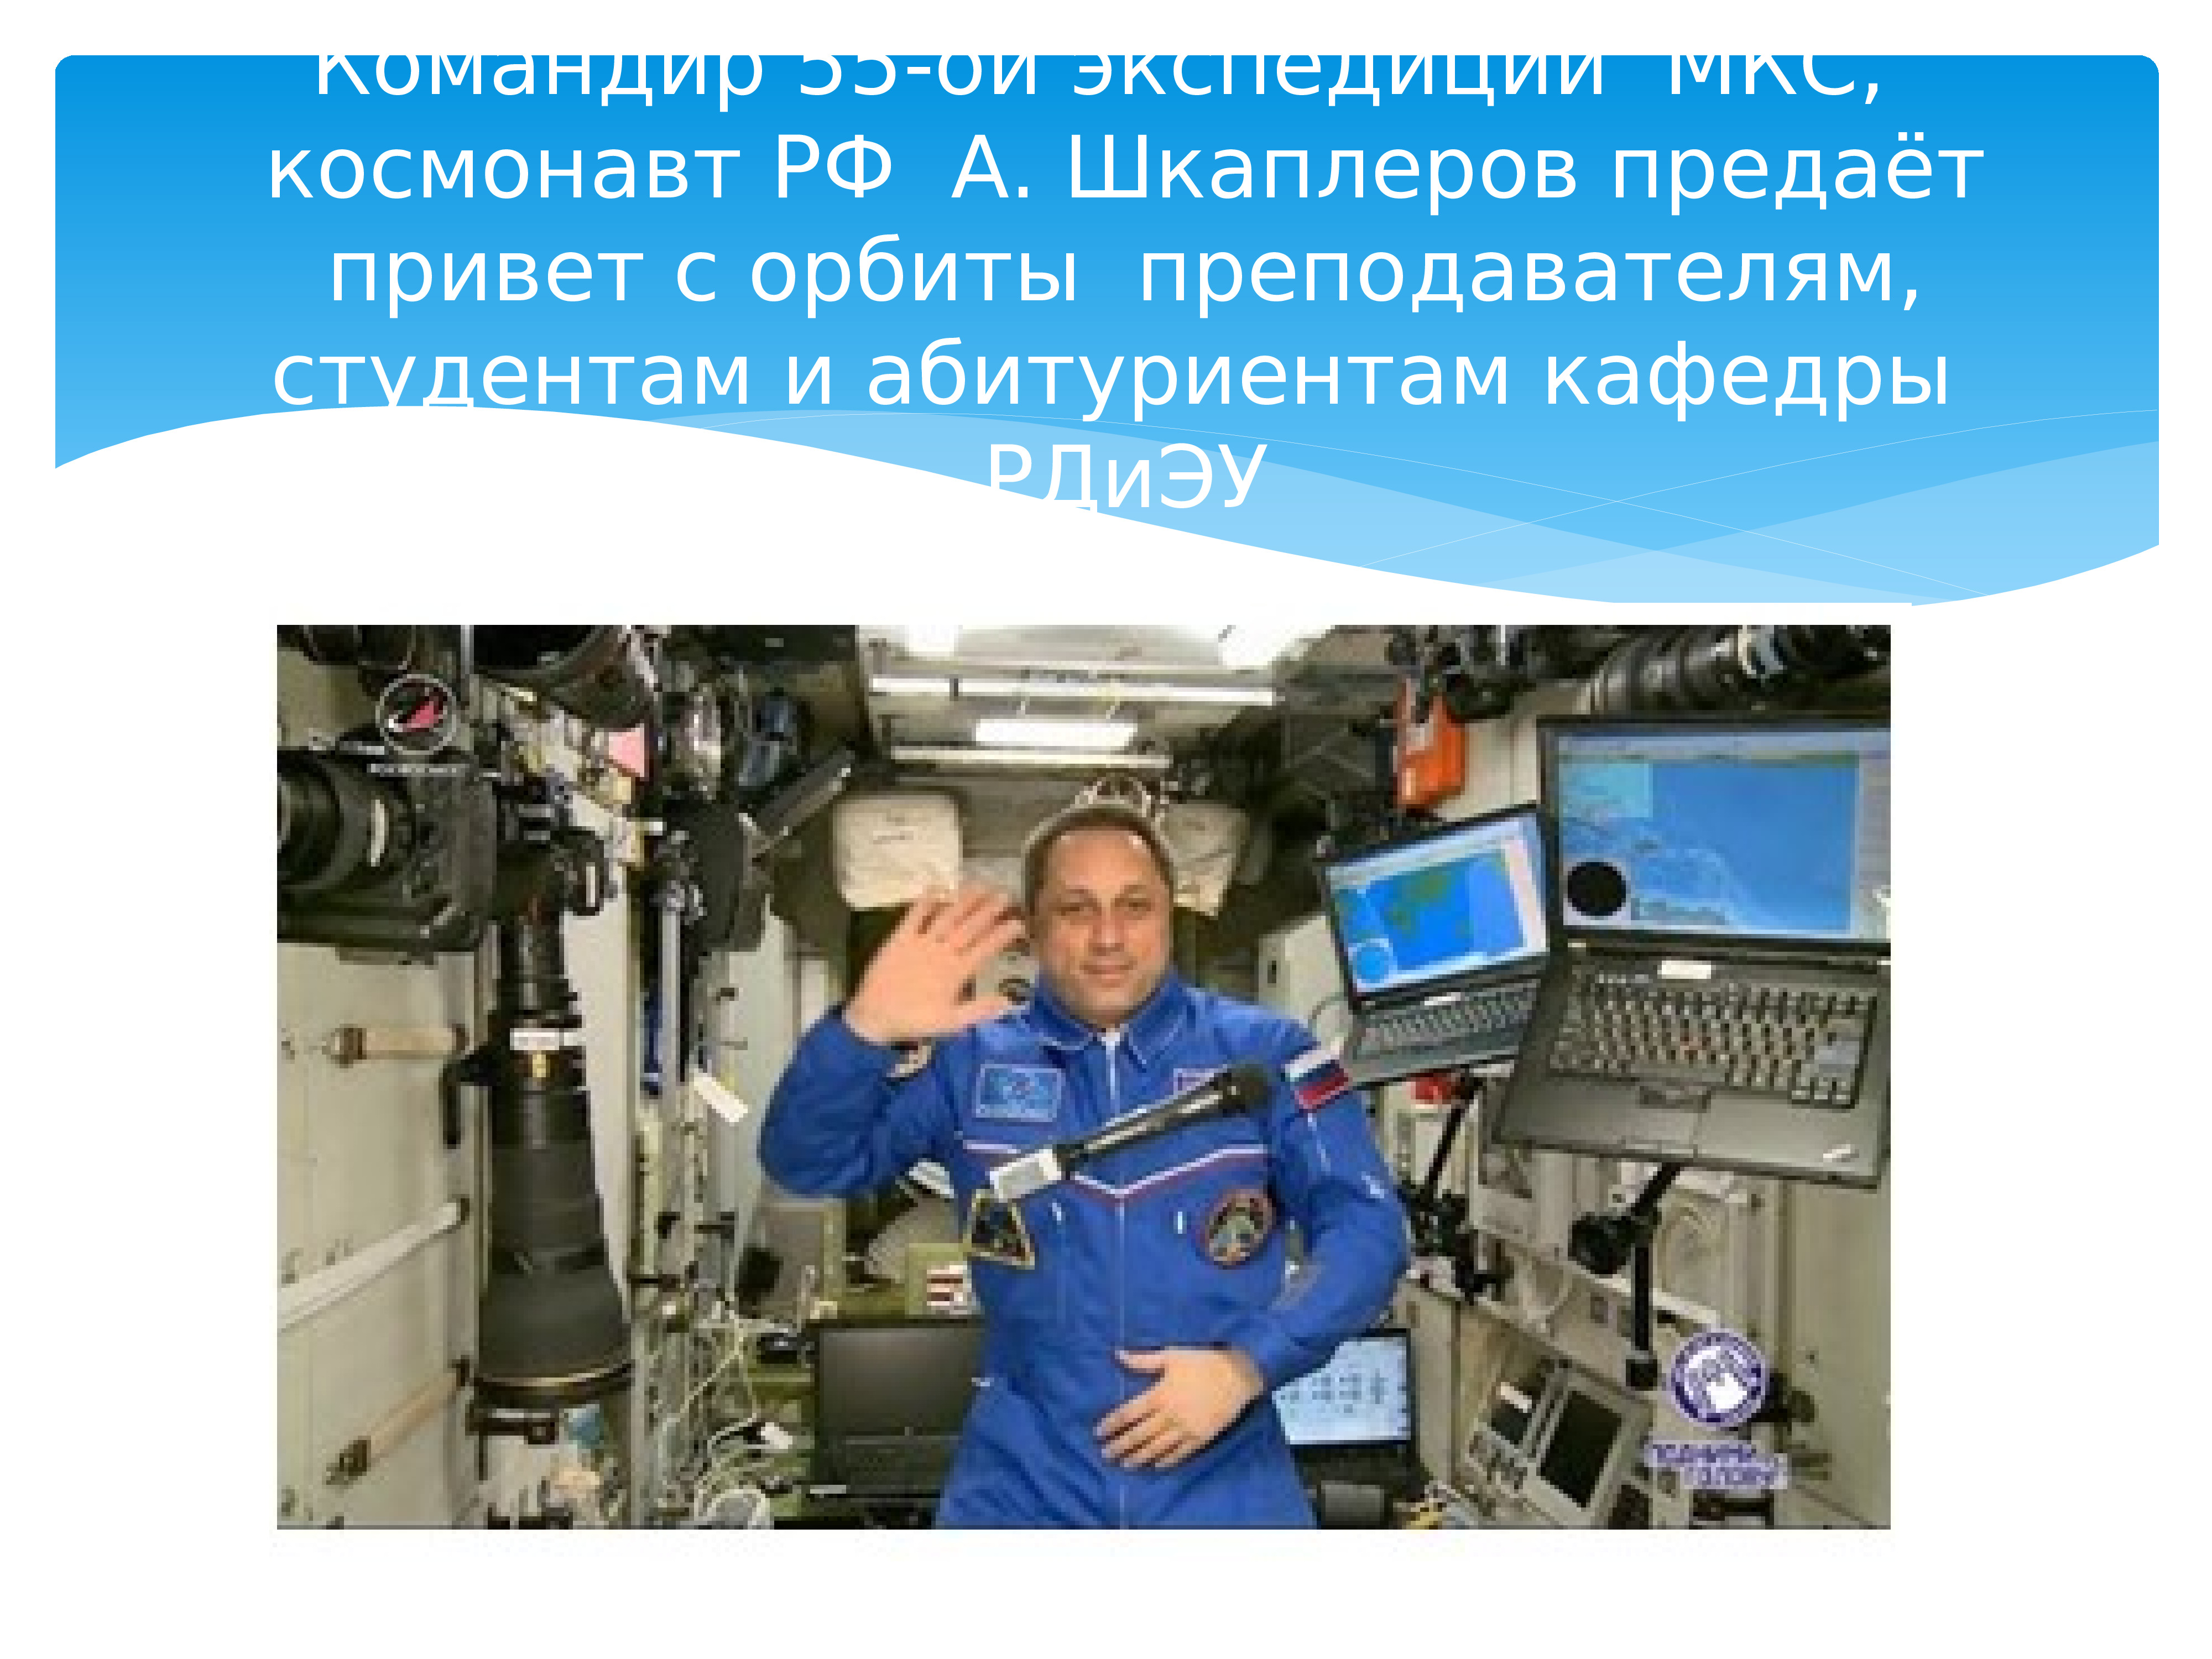 Какая зарплата на мкс. Сколько зарабатывает космонавт на МКС. ЗП Космонавта России. Шкаплер космонавты России презентация. Сколько зарабатывают космонавты.